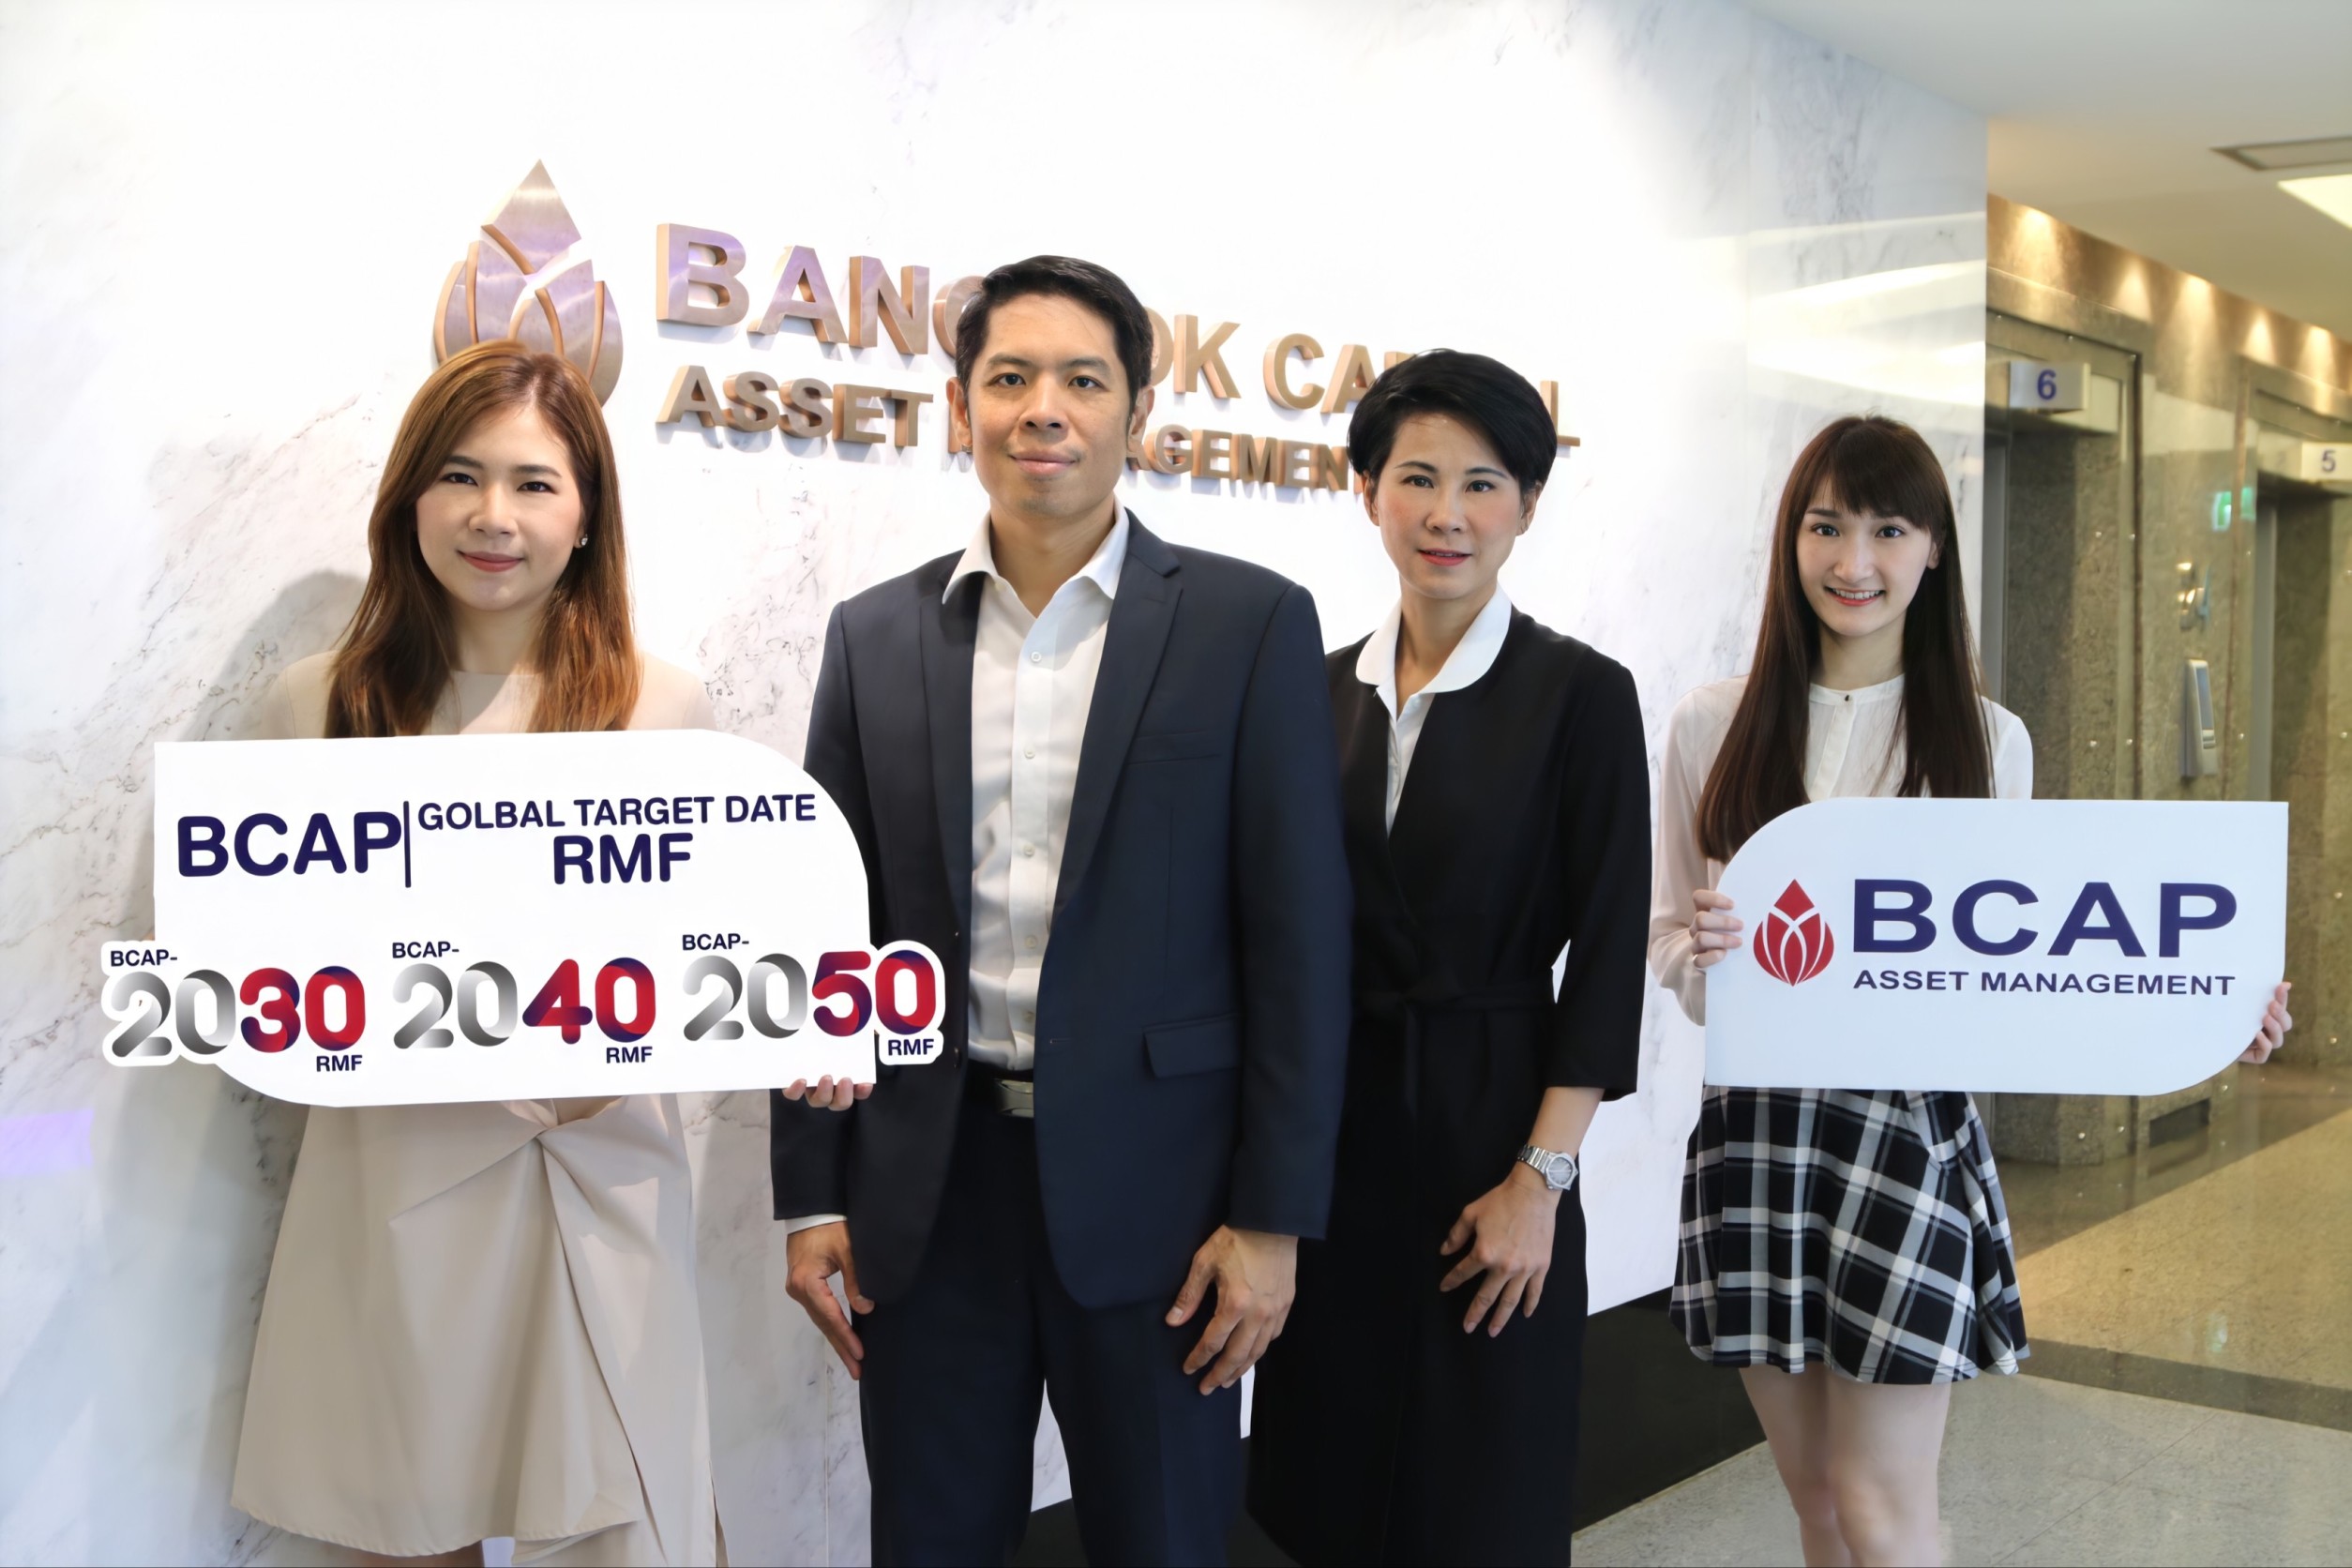 BCAP ส่งซีรีย์กองทุน RMF แรกในประเทศไทย ที่ปรับสัดส่วนการลงทุนอัตโนมัติให้สอดคล้องกับช่วงอายุผู้ลงทุน